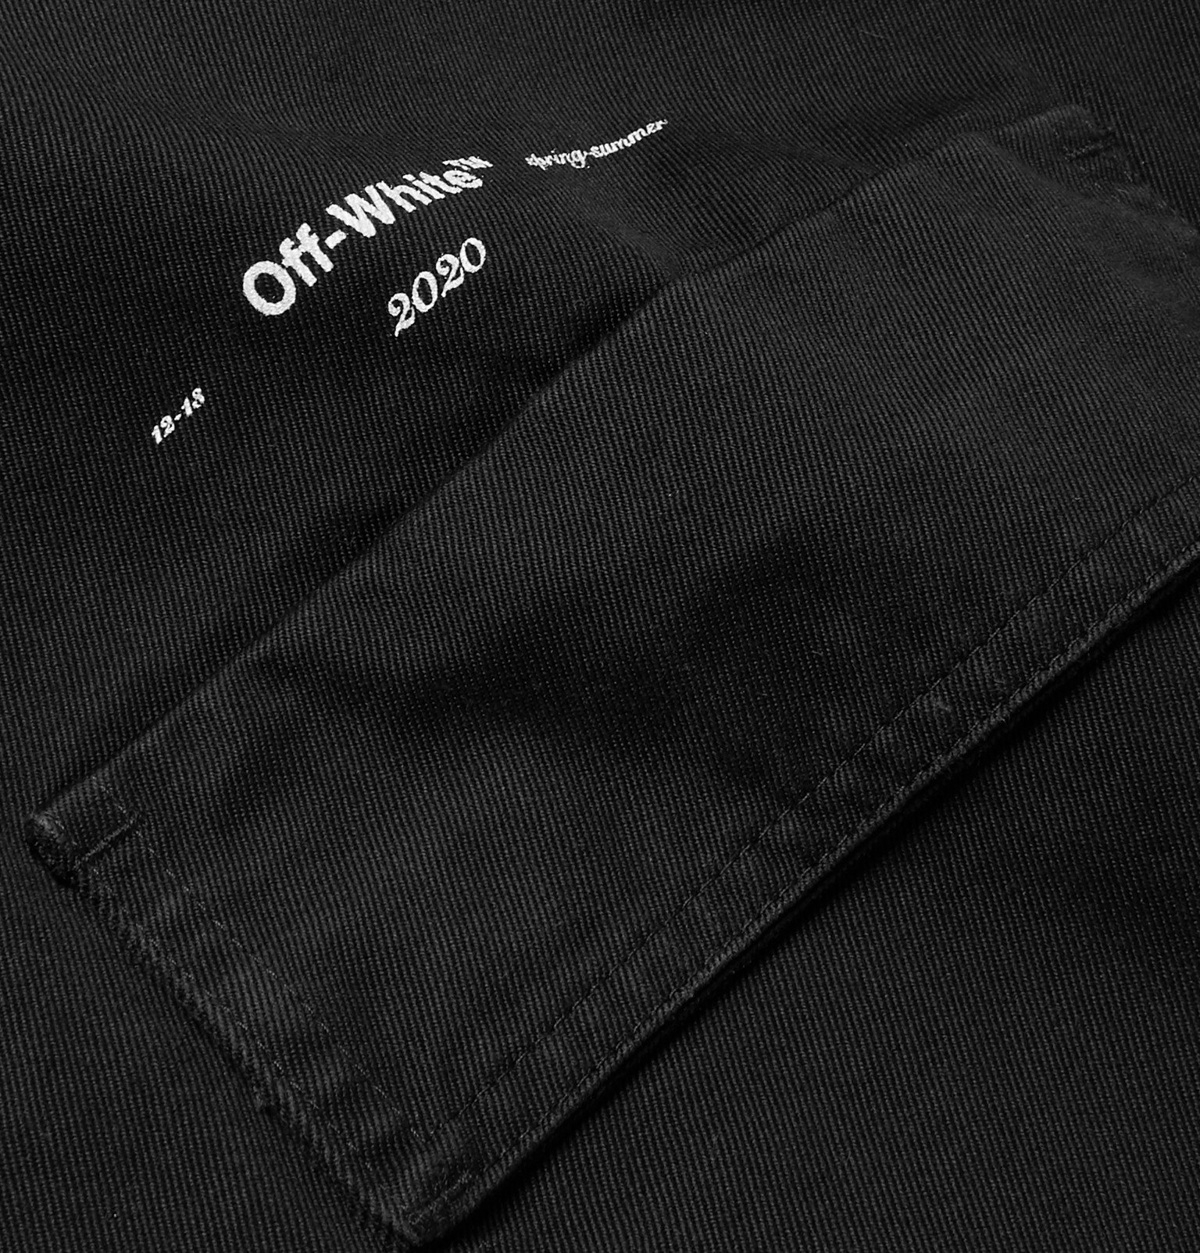 Off-White - Exact OPP Shirt Jacket, Men, Black